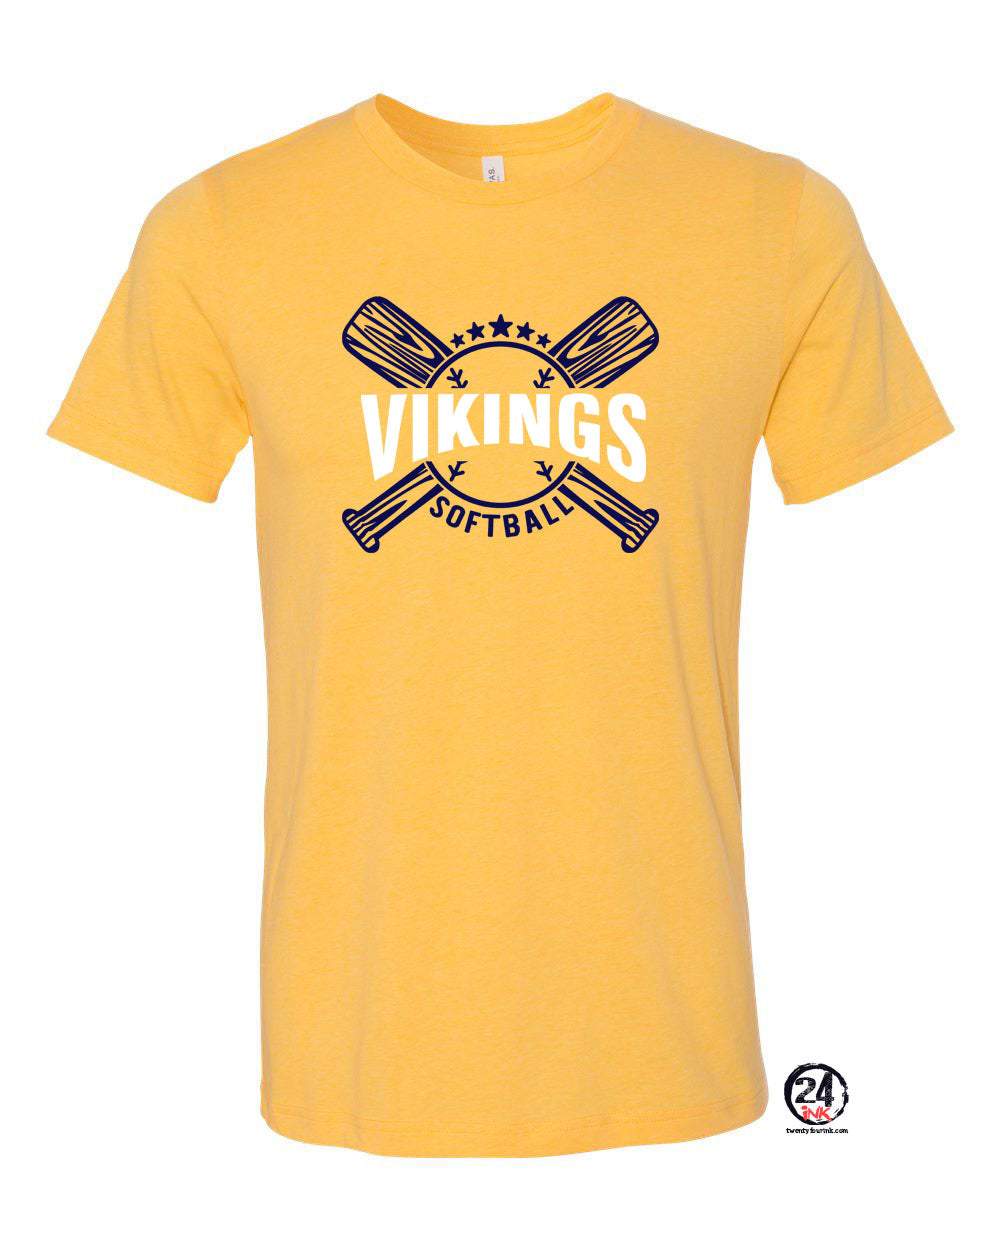 Vikings Bats Softball Heather Yellow t-Shirt